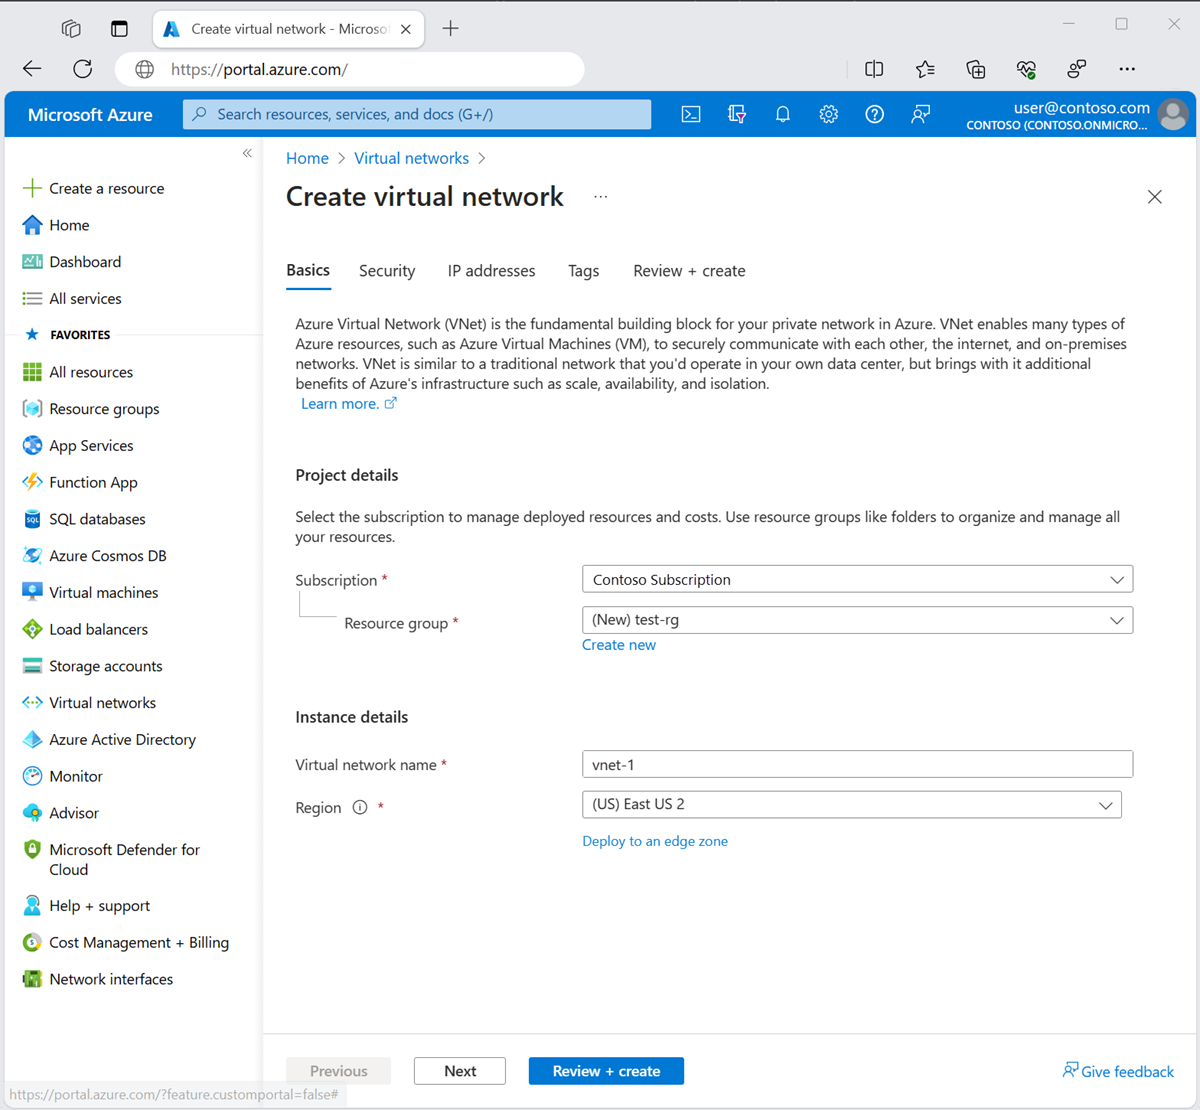 Captura de tela da guia Básico para criar uma rede virtual no portal do Azure.